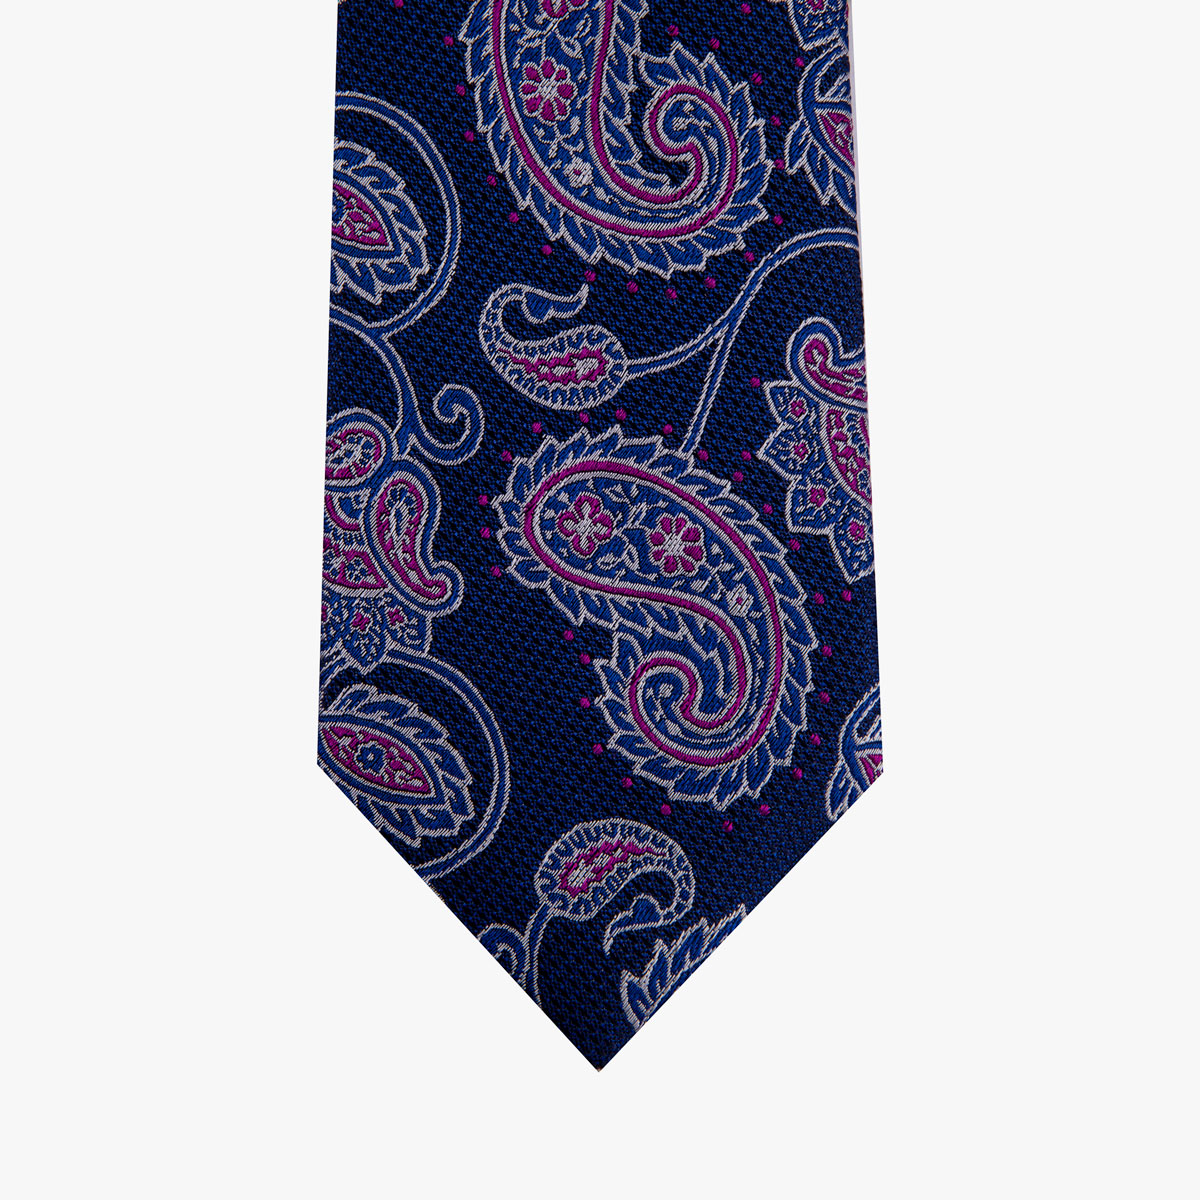 Glatte Krawatte mit Paisley-Muster in blau und magenta